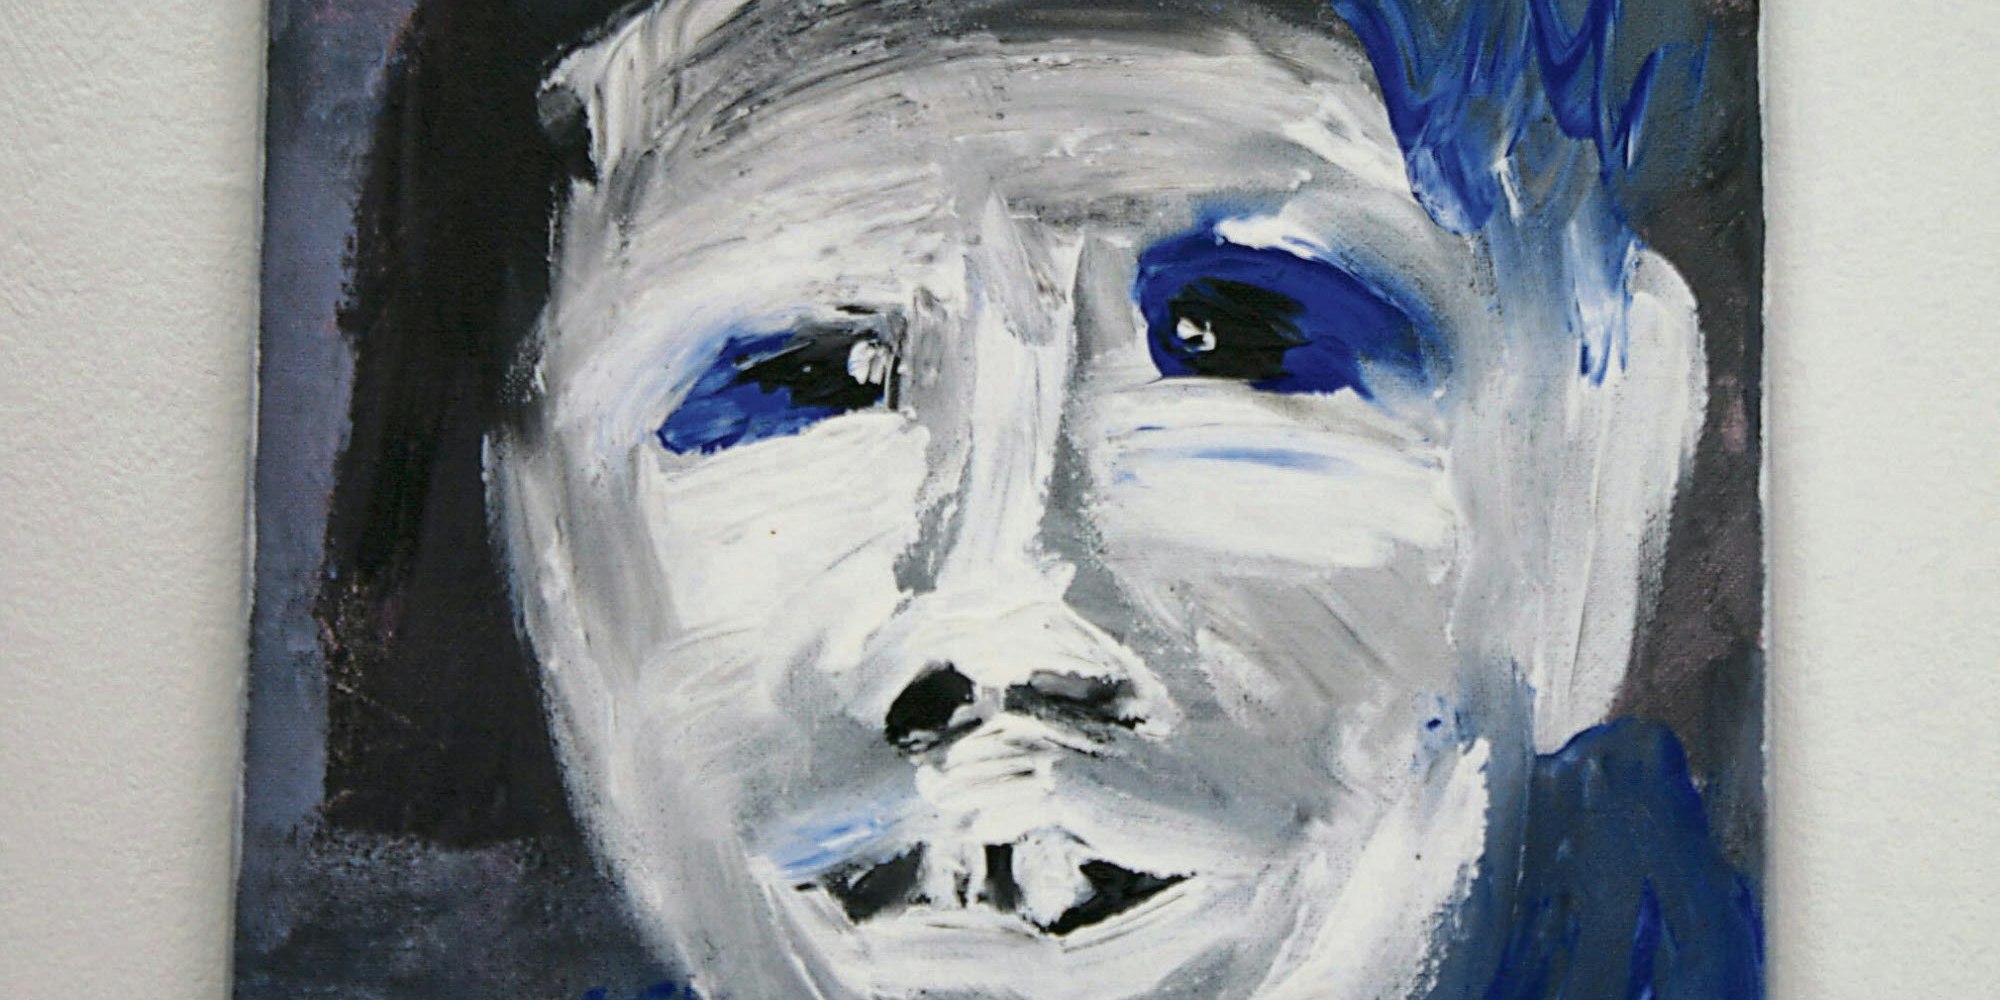 Künstlerin Susebee malt das menschliche Gesicht mit energischer sinnlicher Dynamik als Teil eines bewegten Körpers.